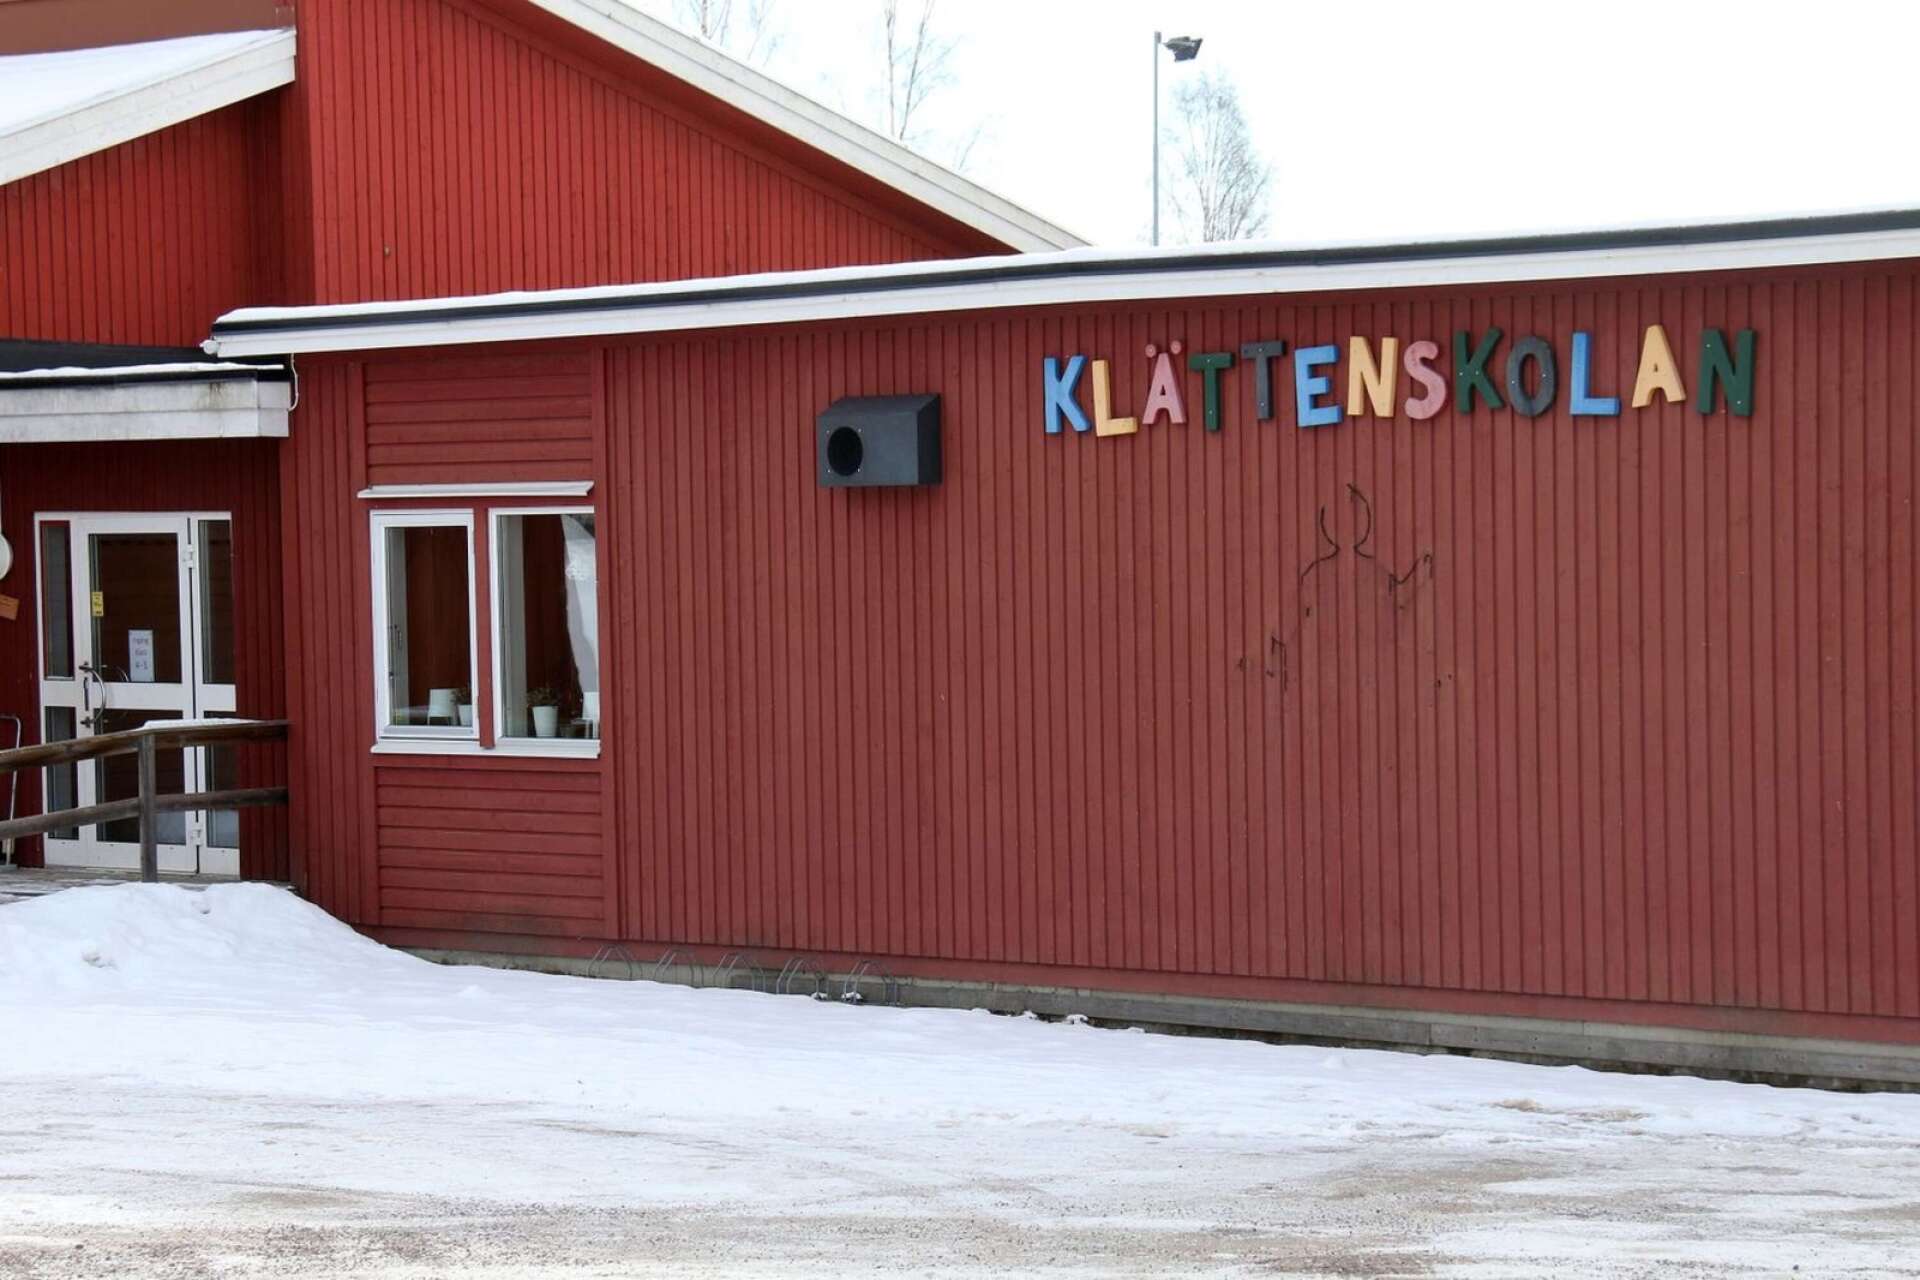 Nedläggningshotet mot Klättenskolan i Sunne kommun upprör signaturen ”Arg mormor/byråkrat”.